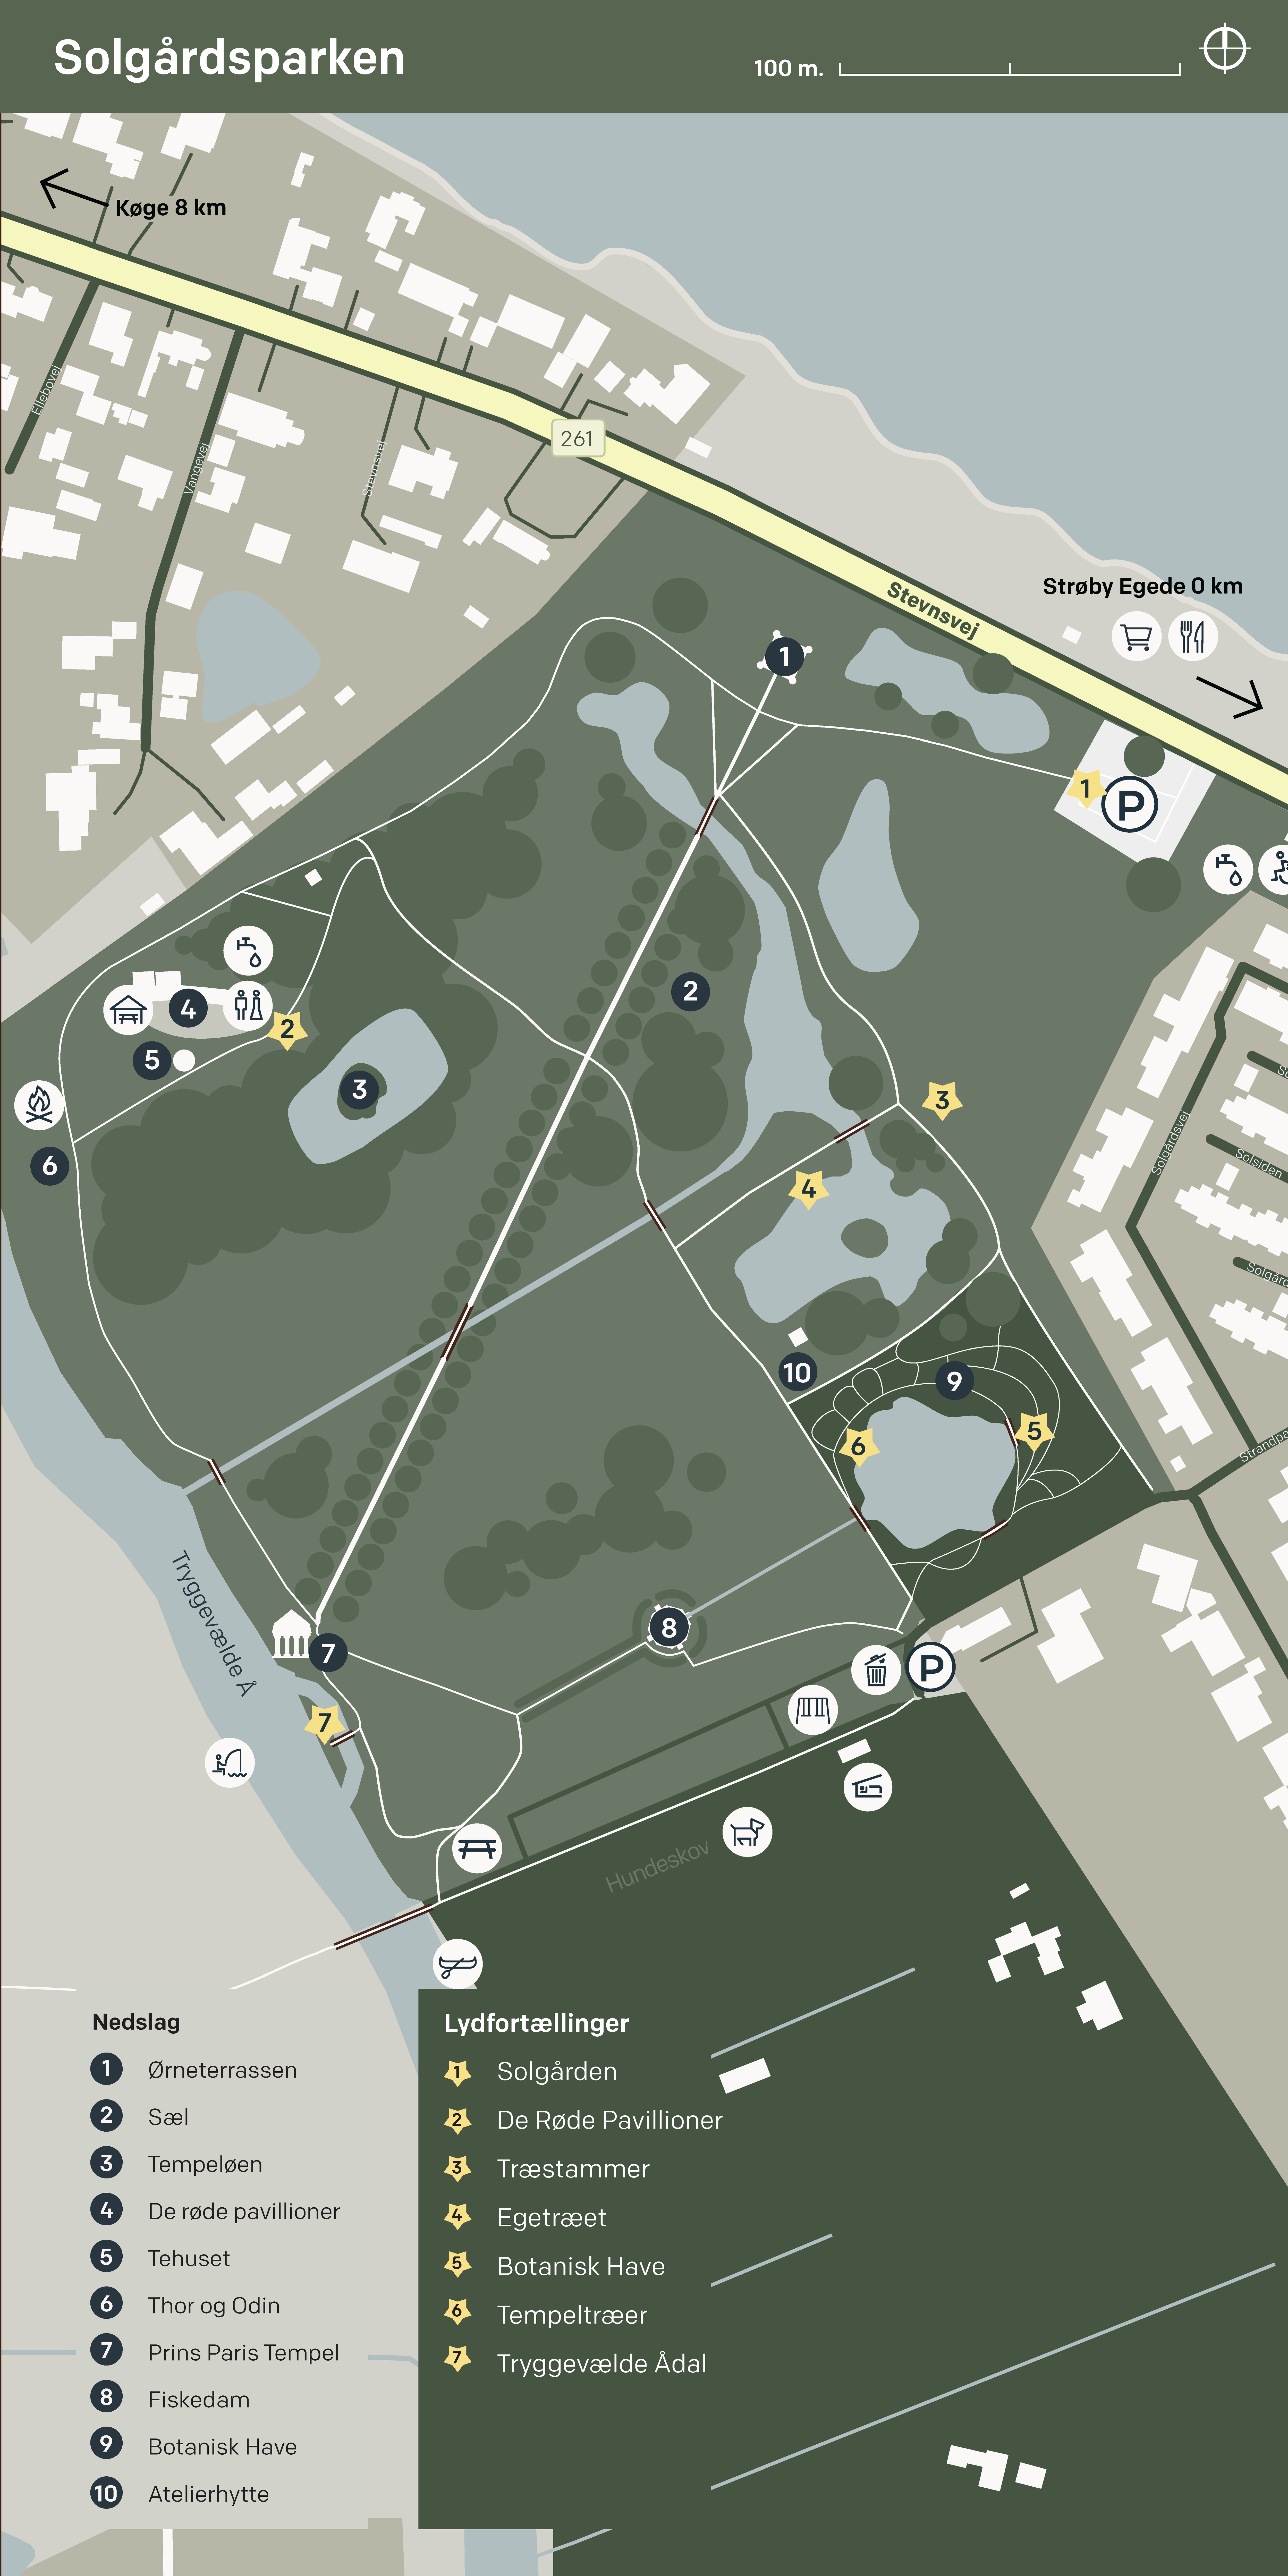 Kort over Solgårdsparken